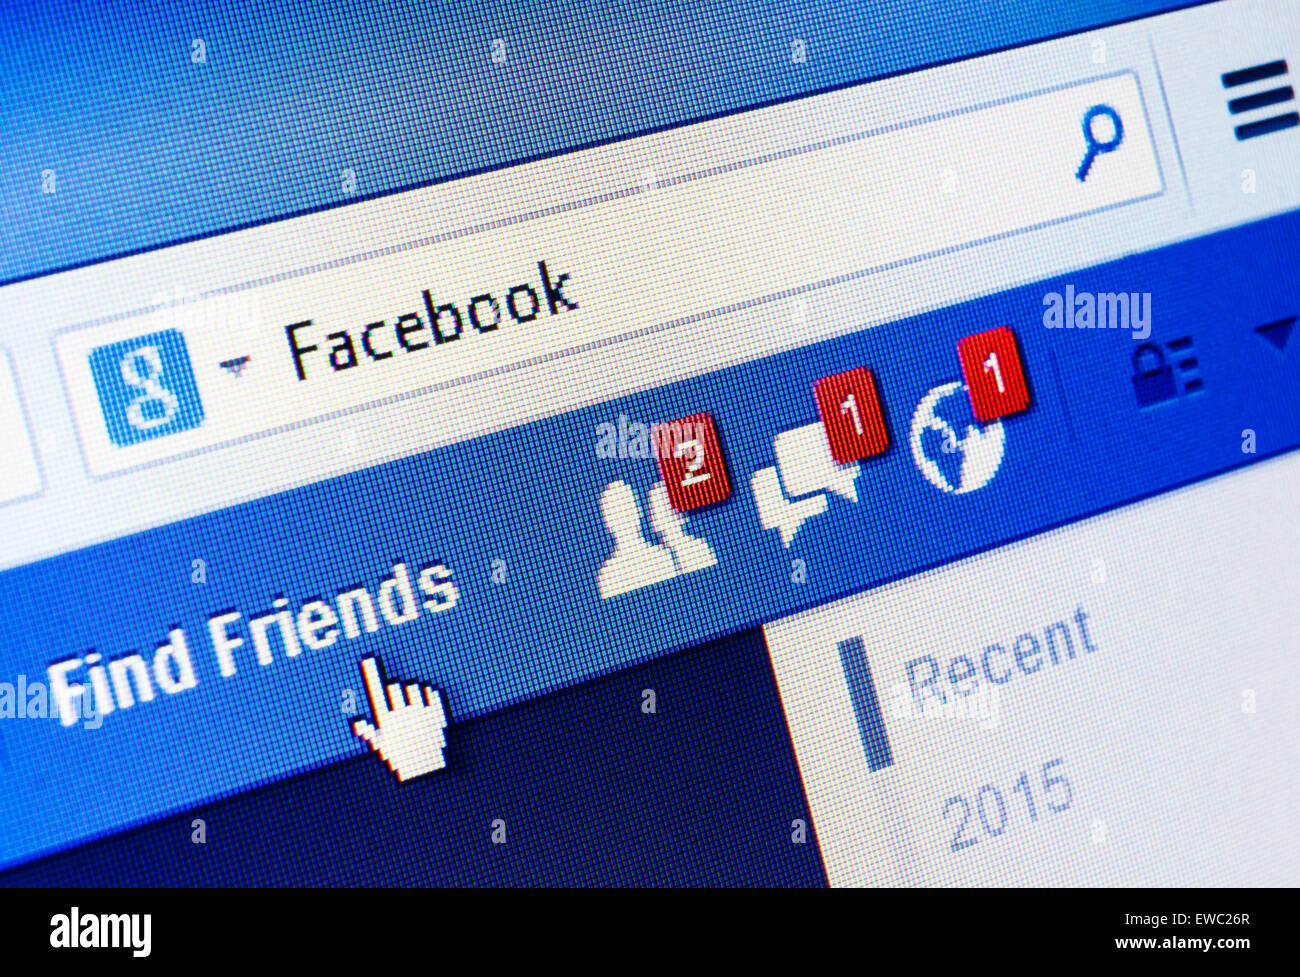 GDANSK, Polonia - 18 gennaio 2015. Facebook.com homepage sullo schermo. Facebook è un servizio online di social networking e microblogging Foto Stock